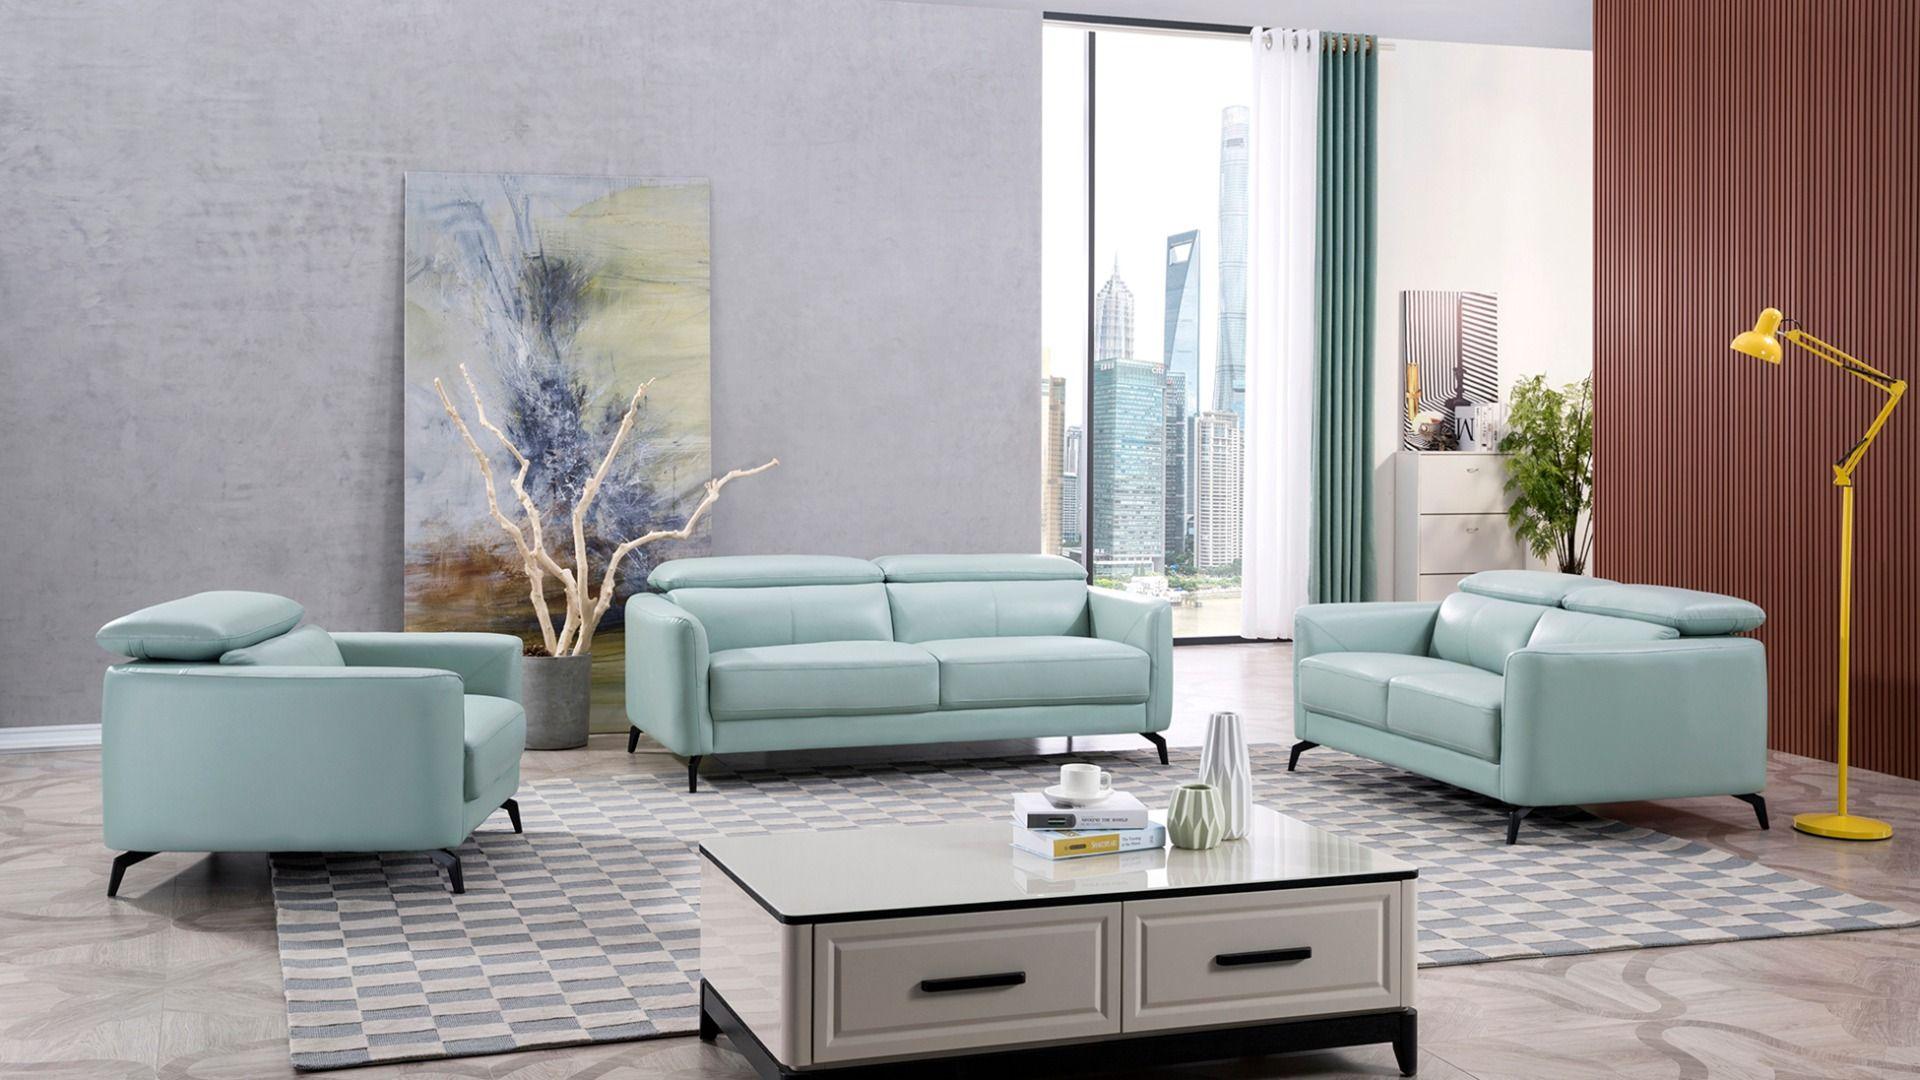 Contemporary, Modern Sofa Set EK155-LGN EK155-LGN-Set-3 in Teal Italian Leather